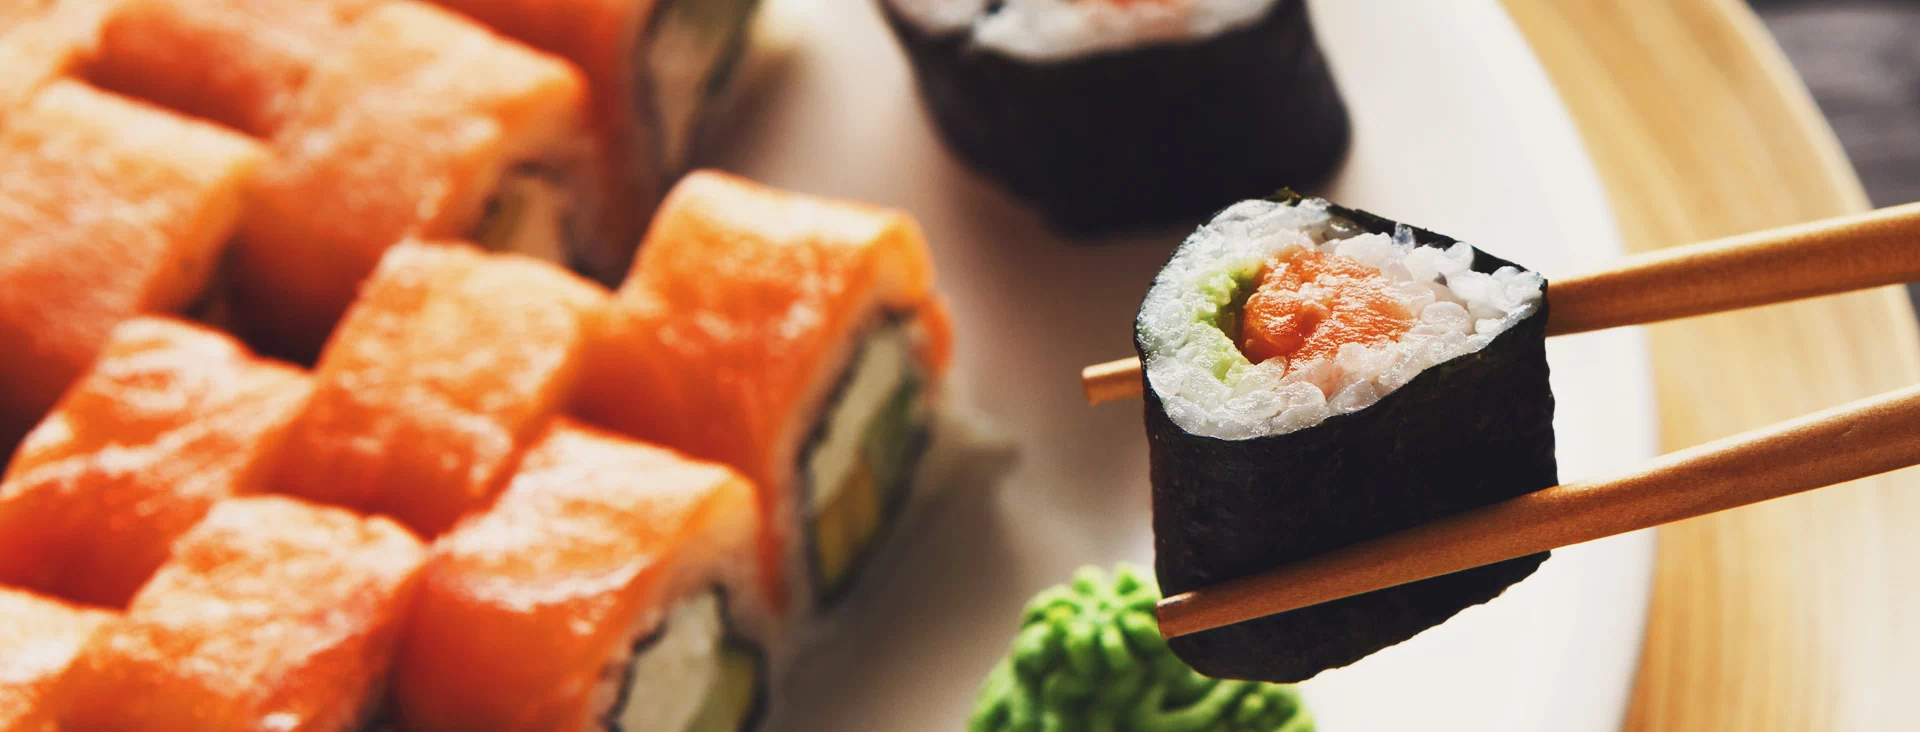 sushi w pałeczkach